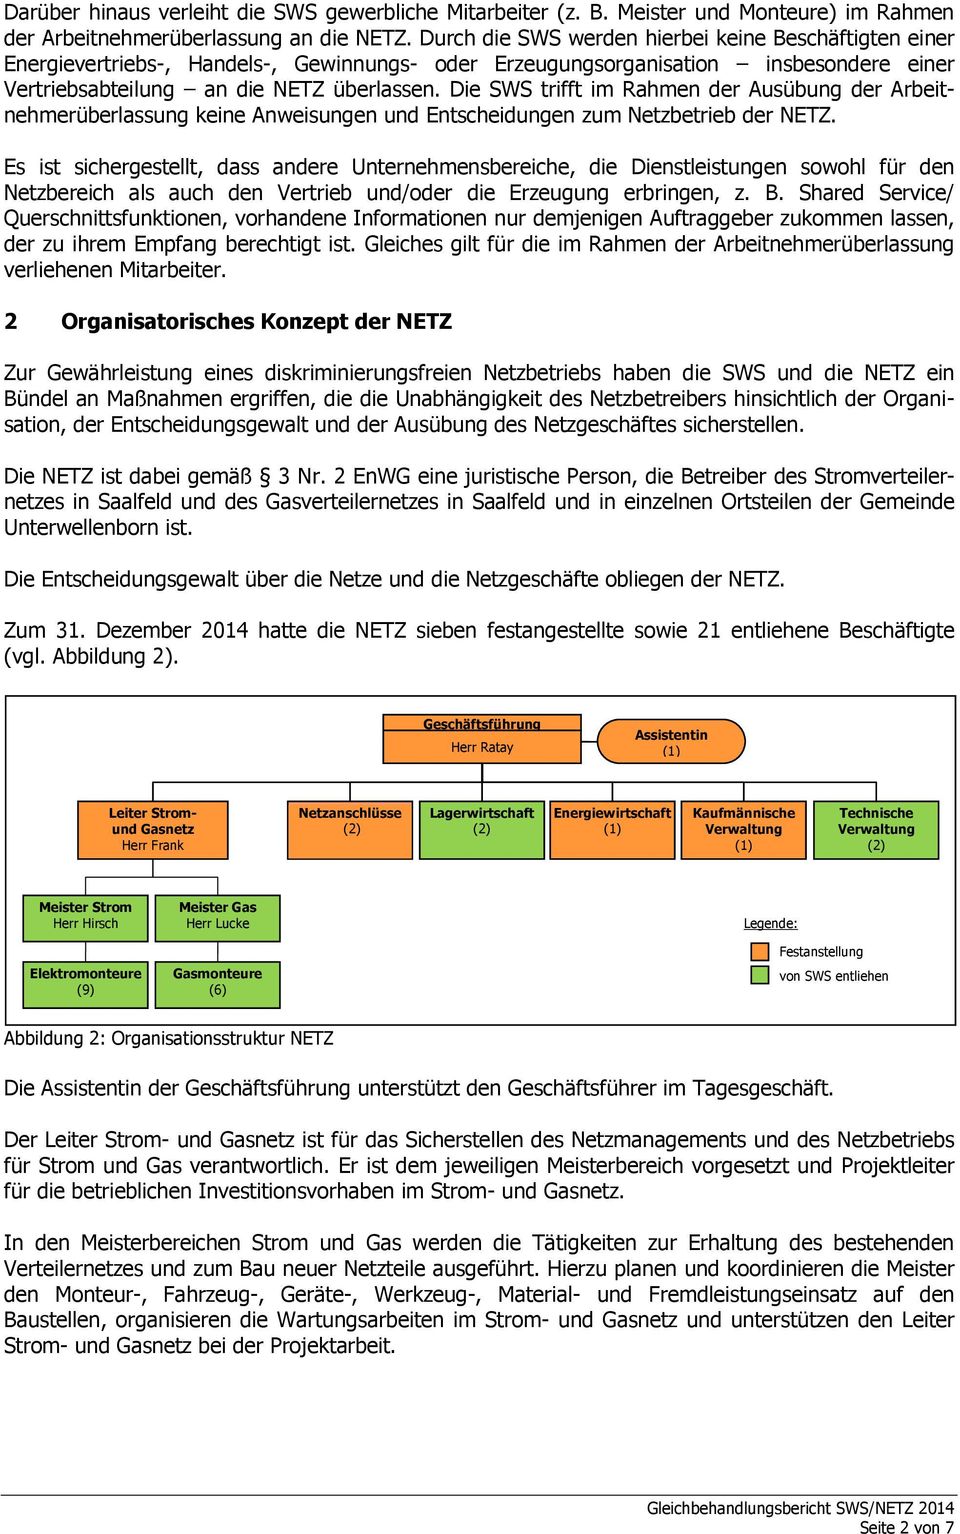 Die SWS trifft im Rahmen der Ausübung der Arbeitnehmerüberlassung keine Anweisungen und Entscheidungen zum Netzbetrieb der NETZ.